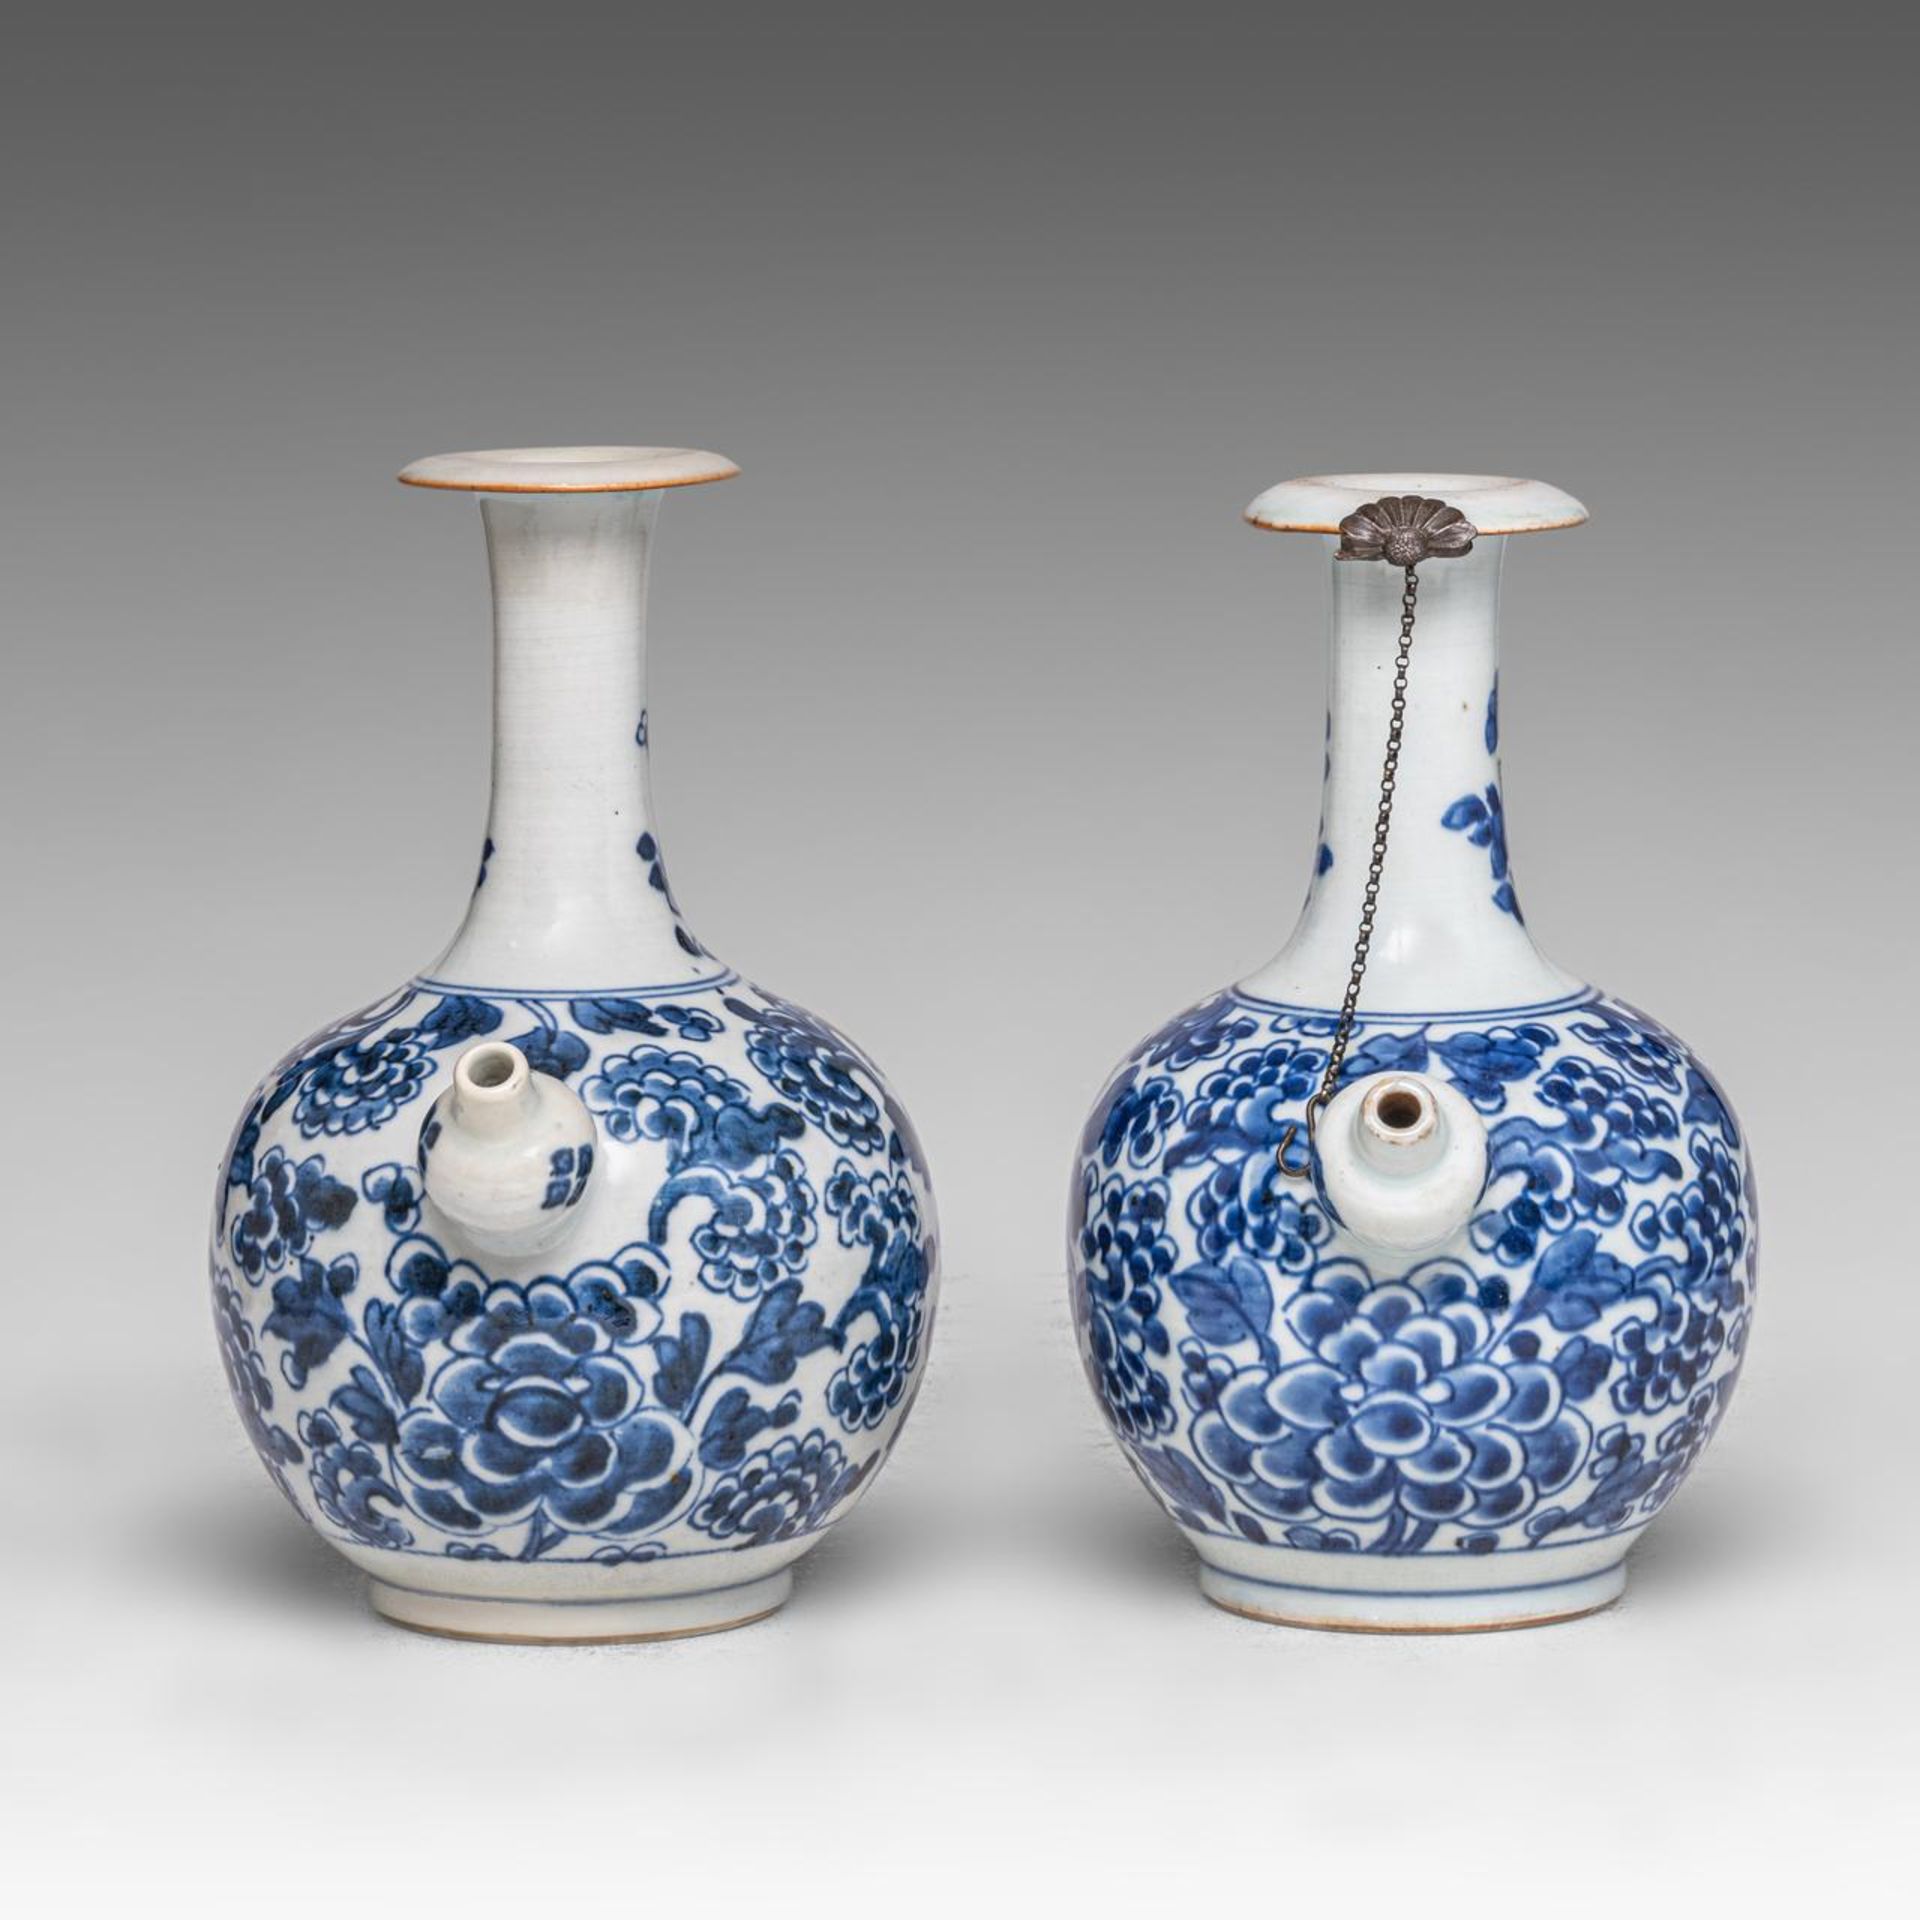 Two Chinese 'Peony scrolls' kendi jugs, Transitional/ Kangxi period, H 20 cm - Image 5 of 7